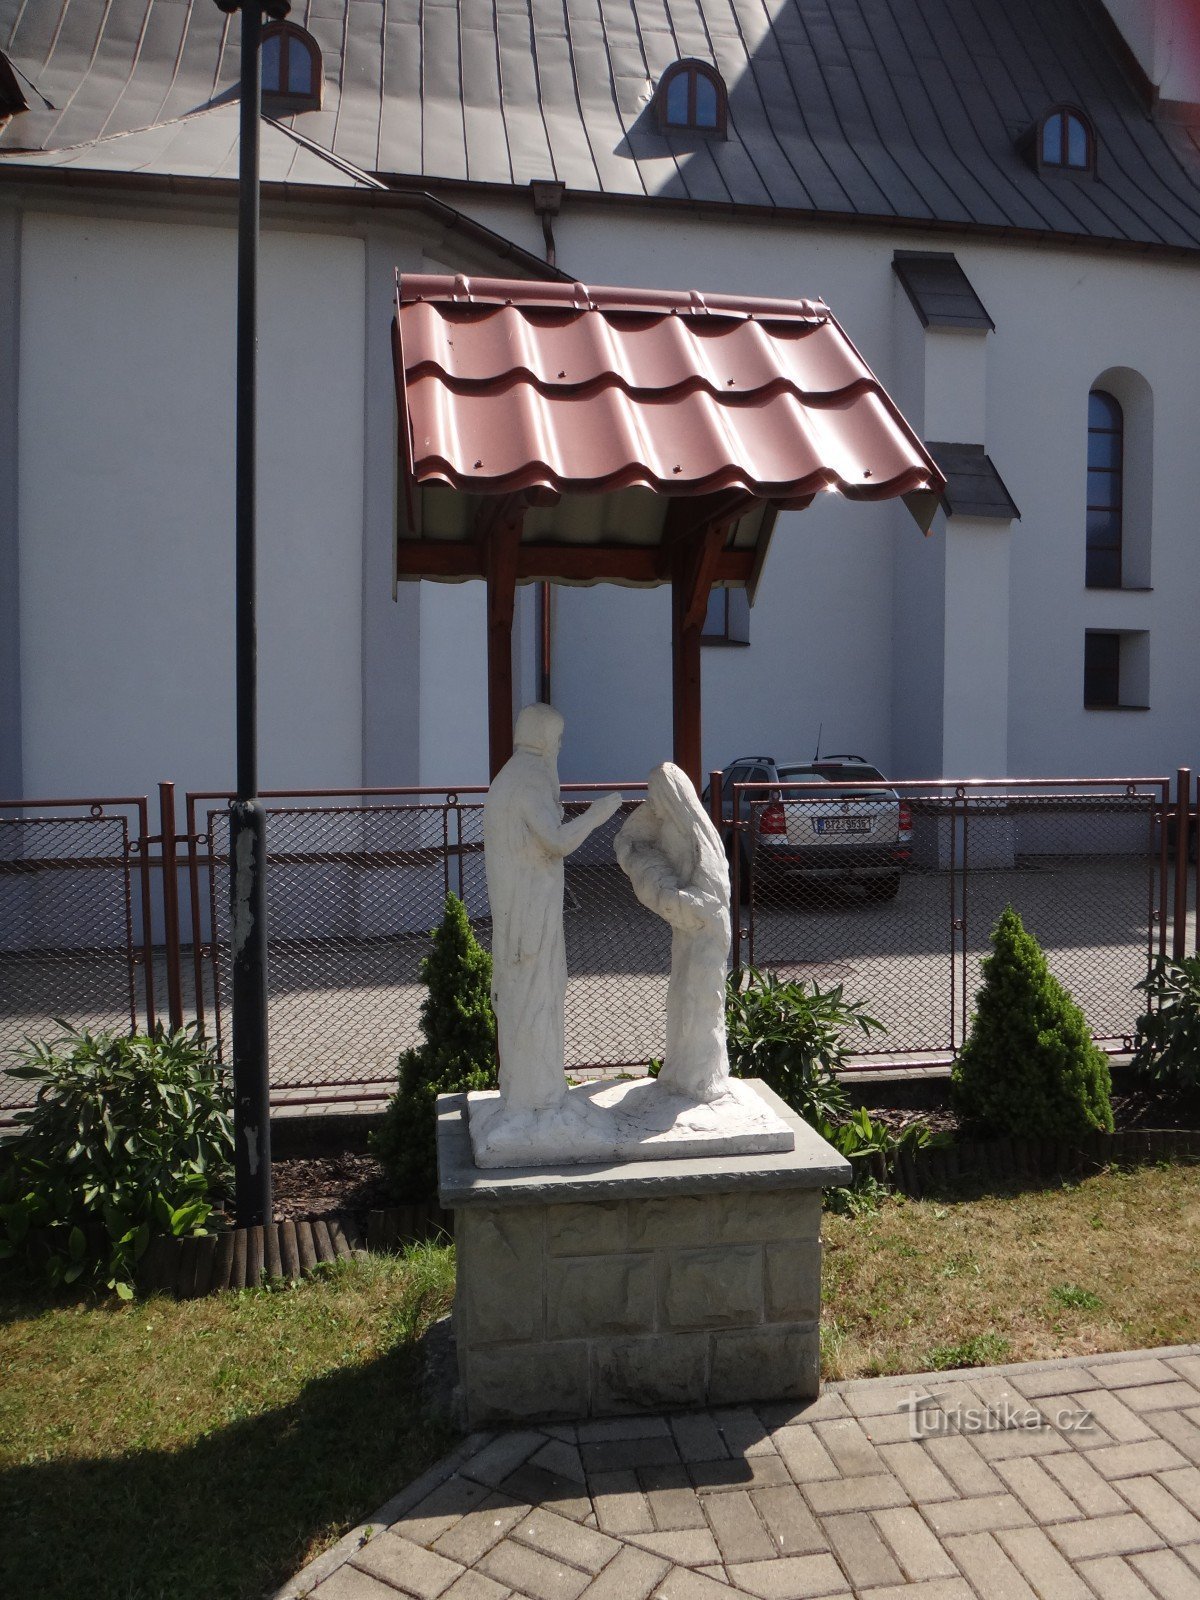 Jablunkov, ecco come vengono realizzate le sculture nell'orto parrocchiale